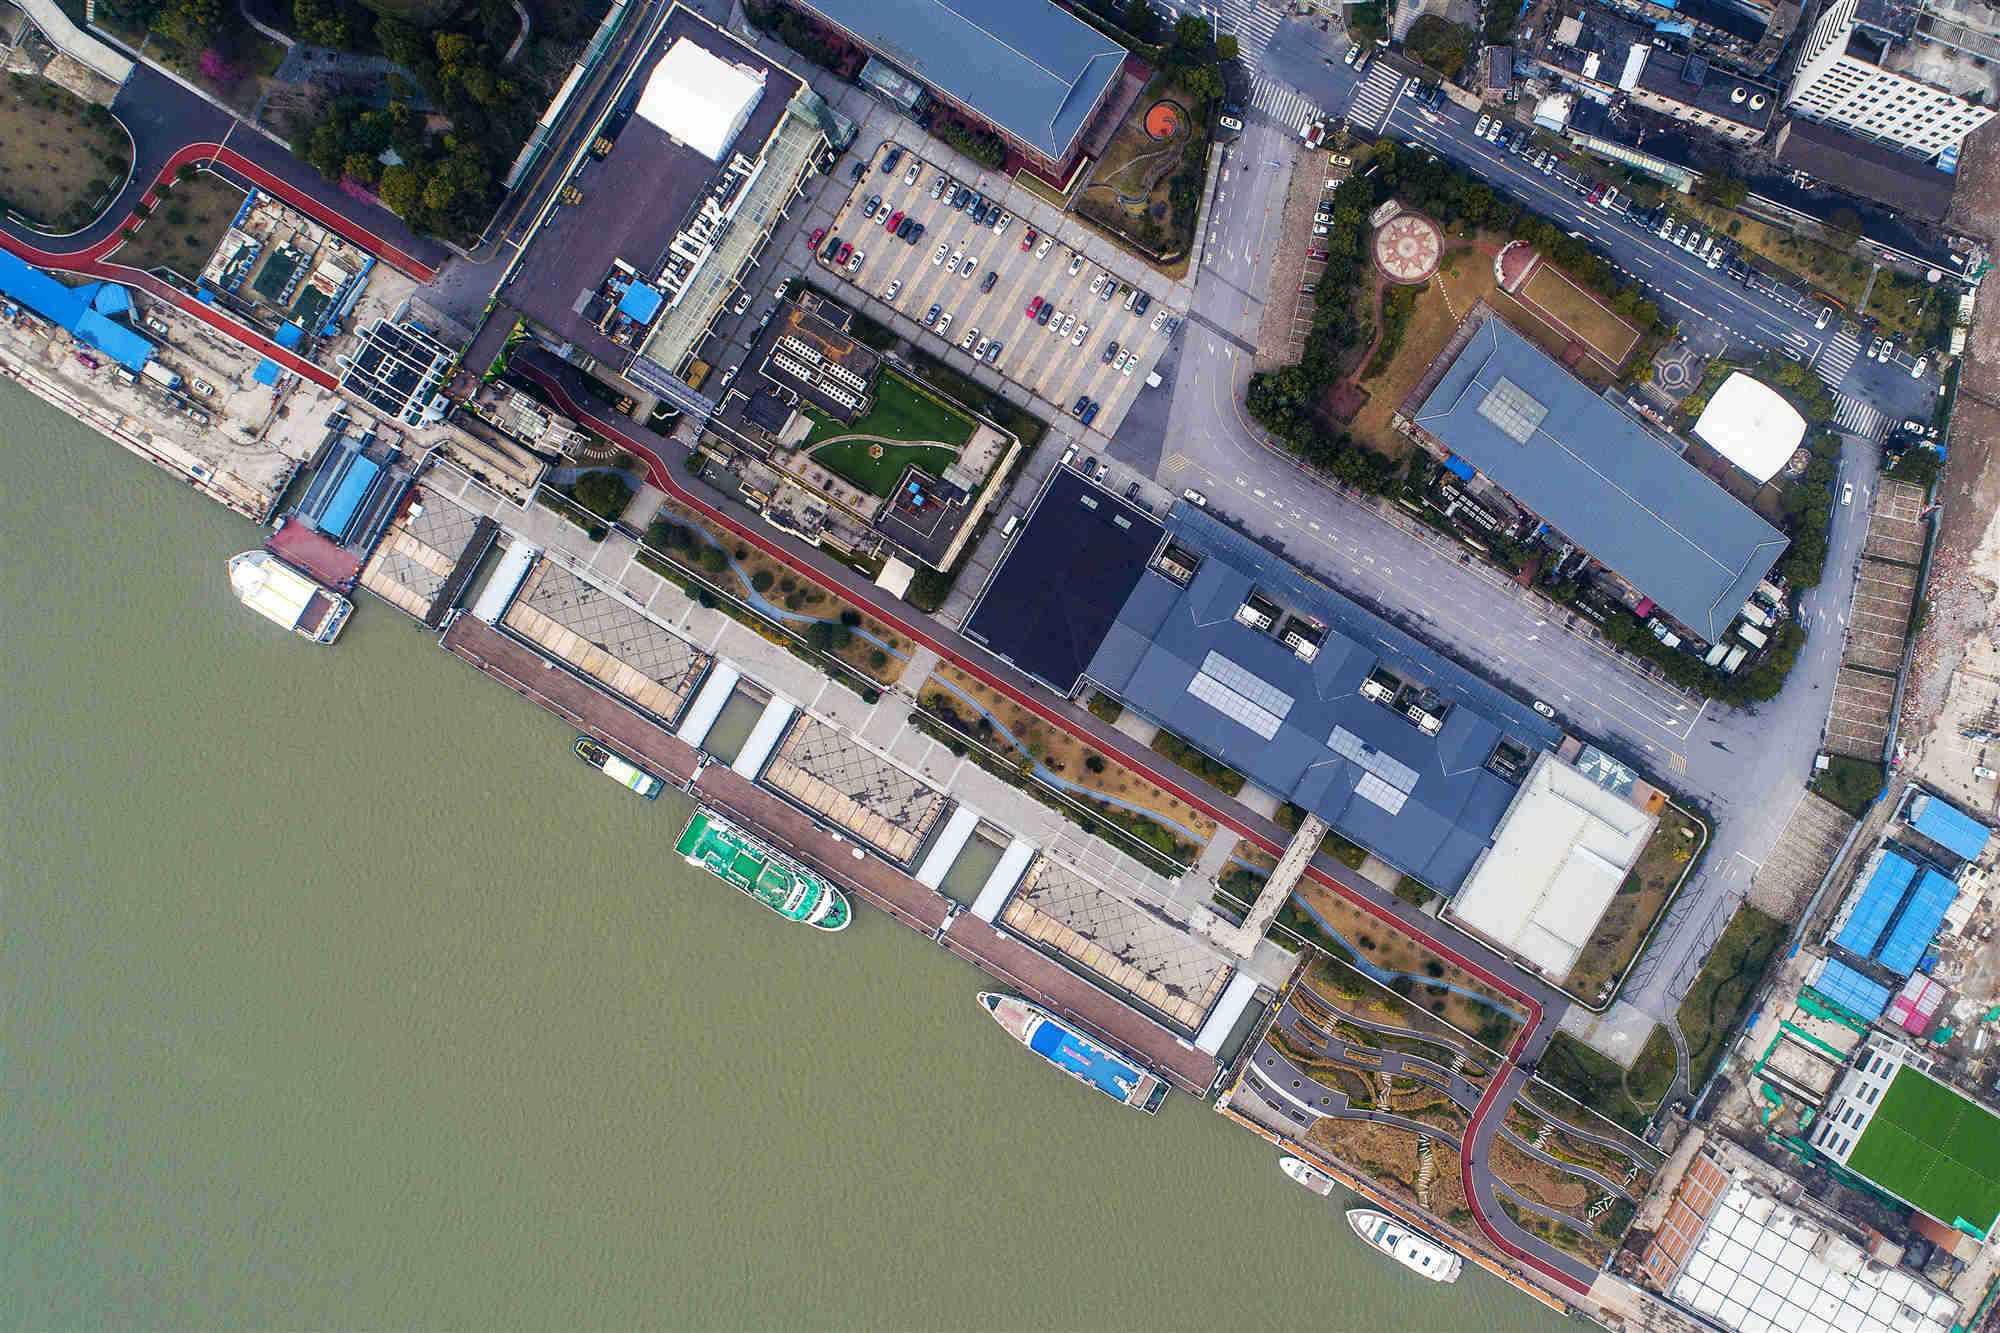 2023珠江夜游广州塔·中大码头游玩攻略,但吹着江风看夜景实在很舒服...【去哪儿攻略】